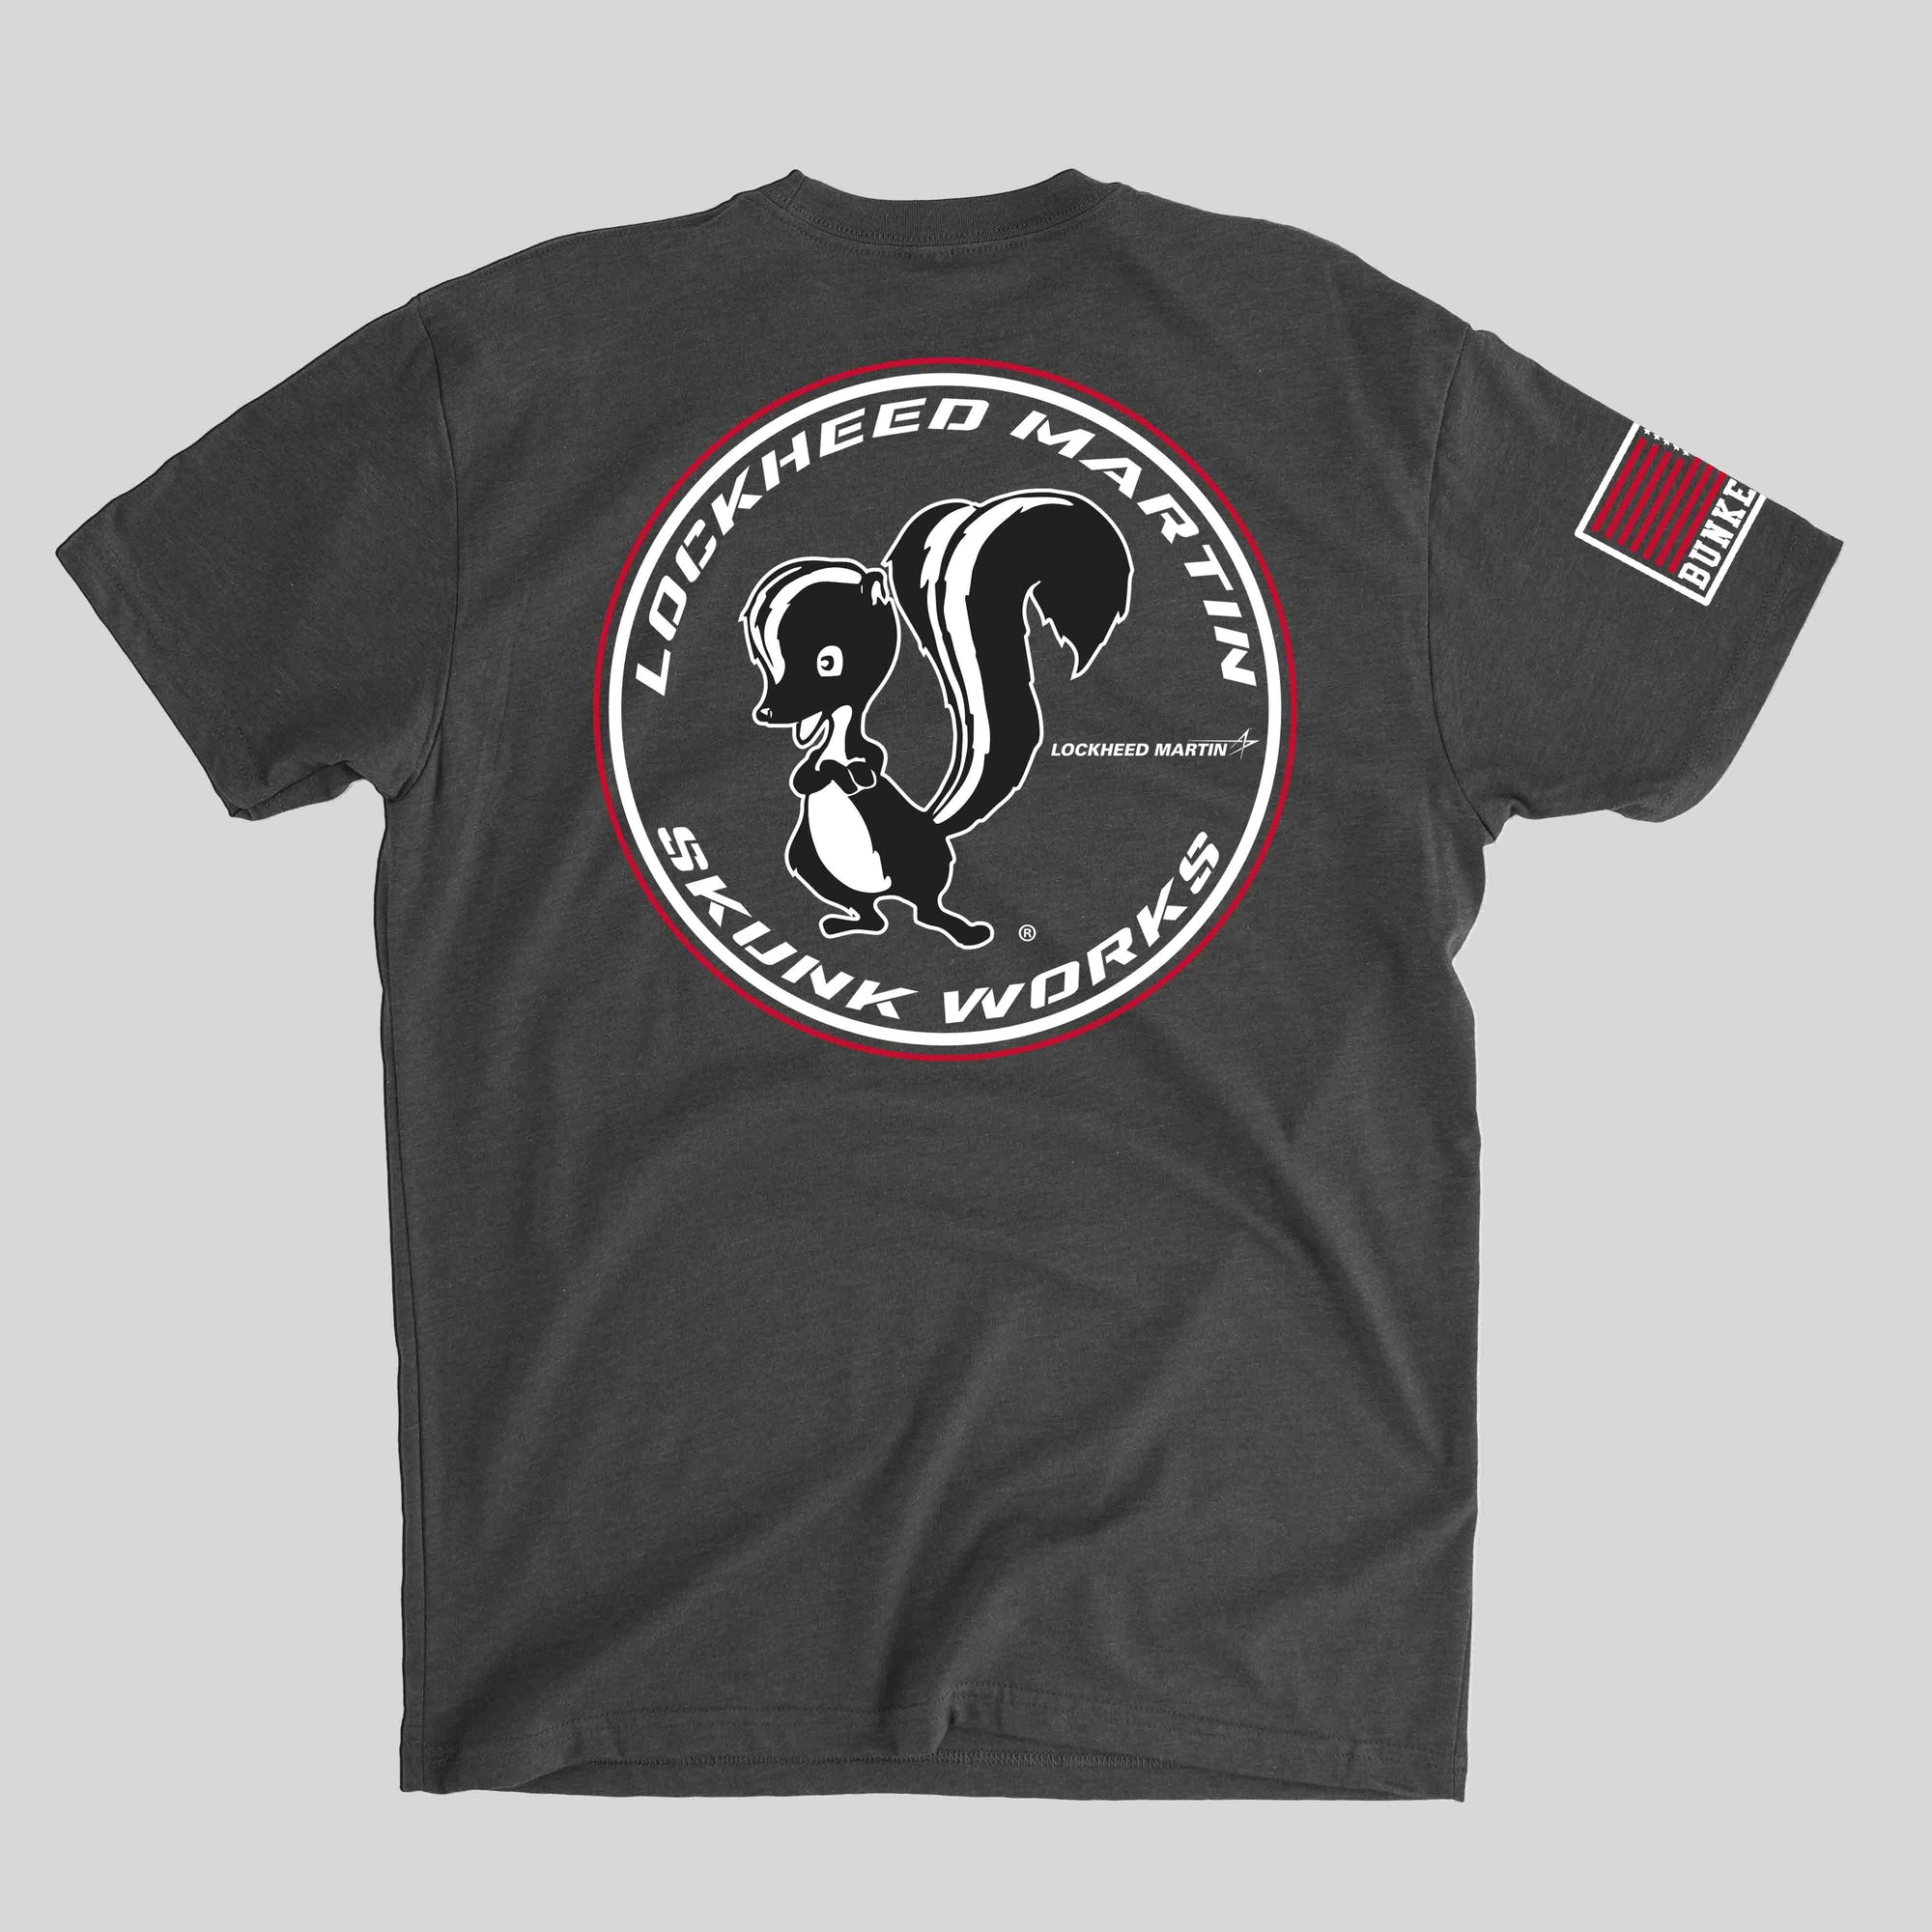 Skunk Works T-Shirt